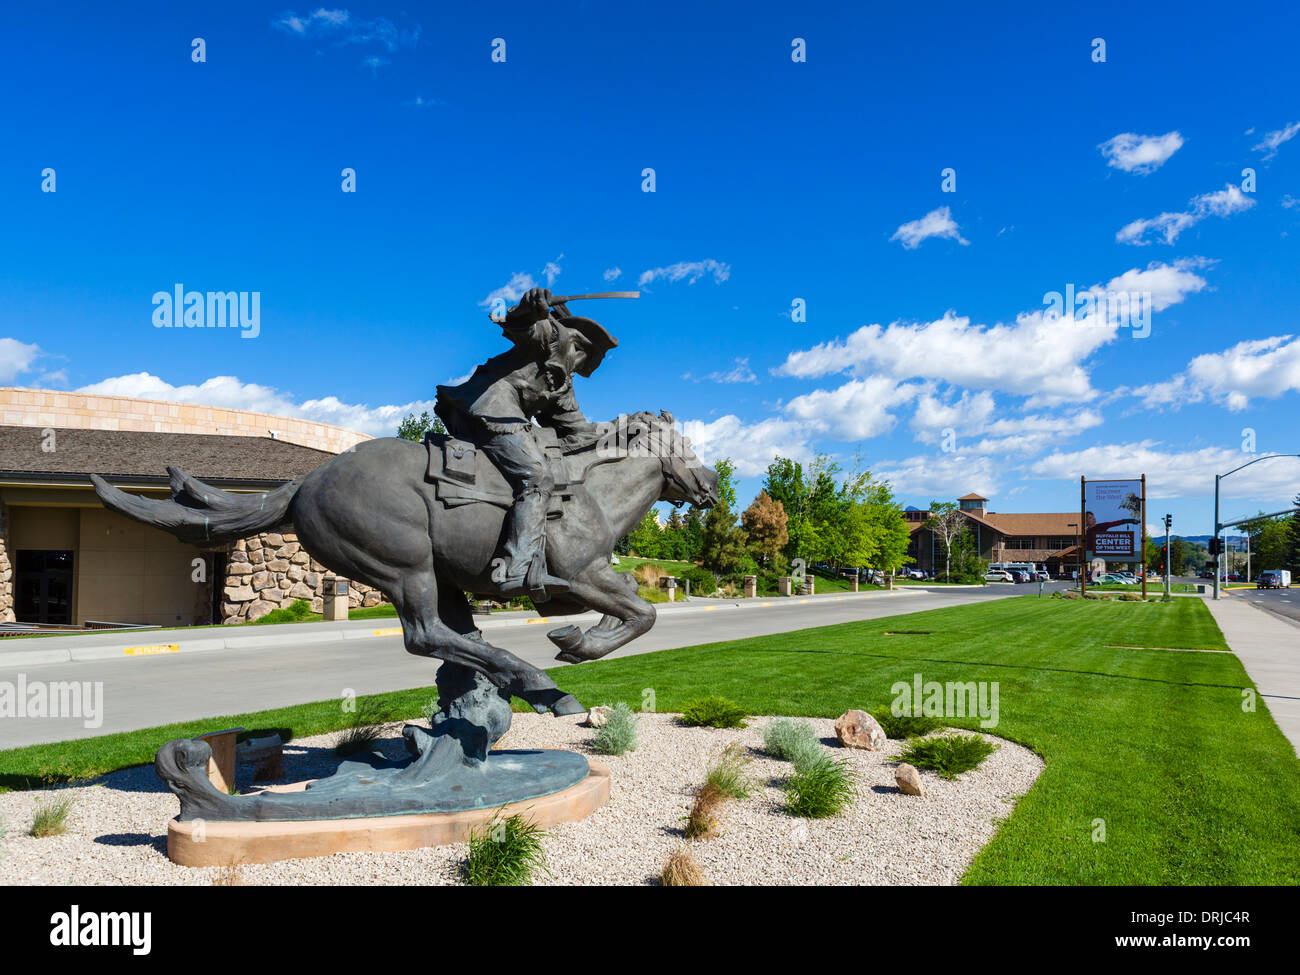 Bill Cody - fuerte y rápido todo el camino Pony Express escultura fuera del centro histórico de Buffalo Bill Cody, Wyoming, EE.UU. Foto de stock